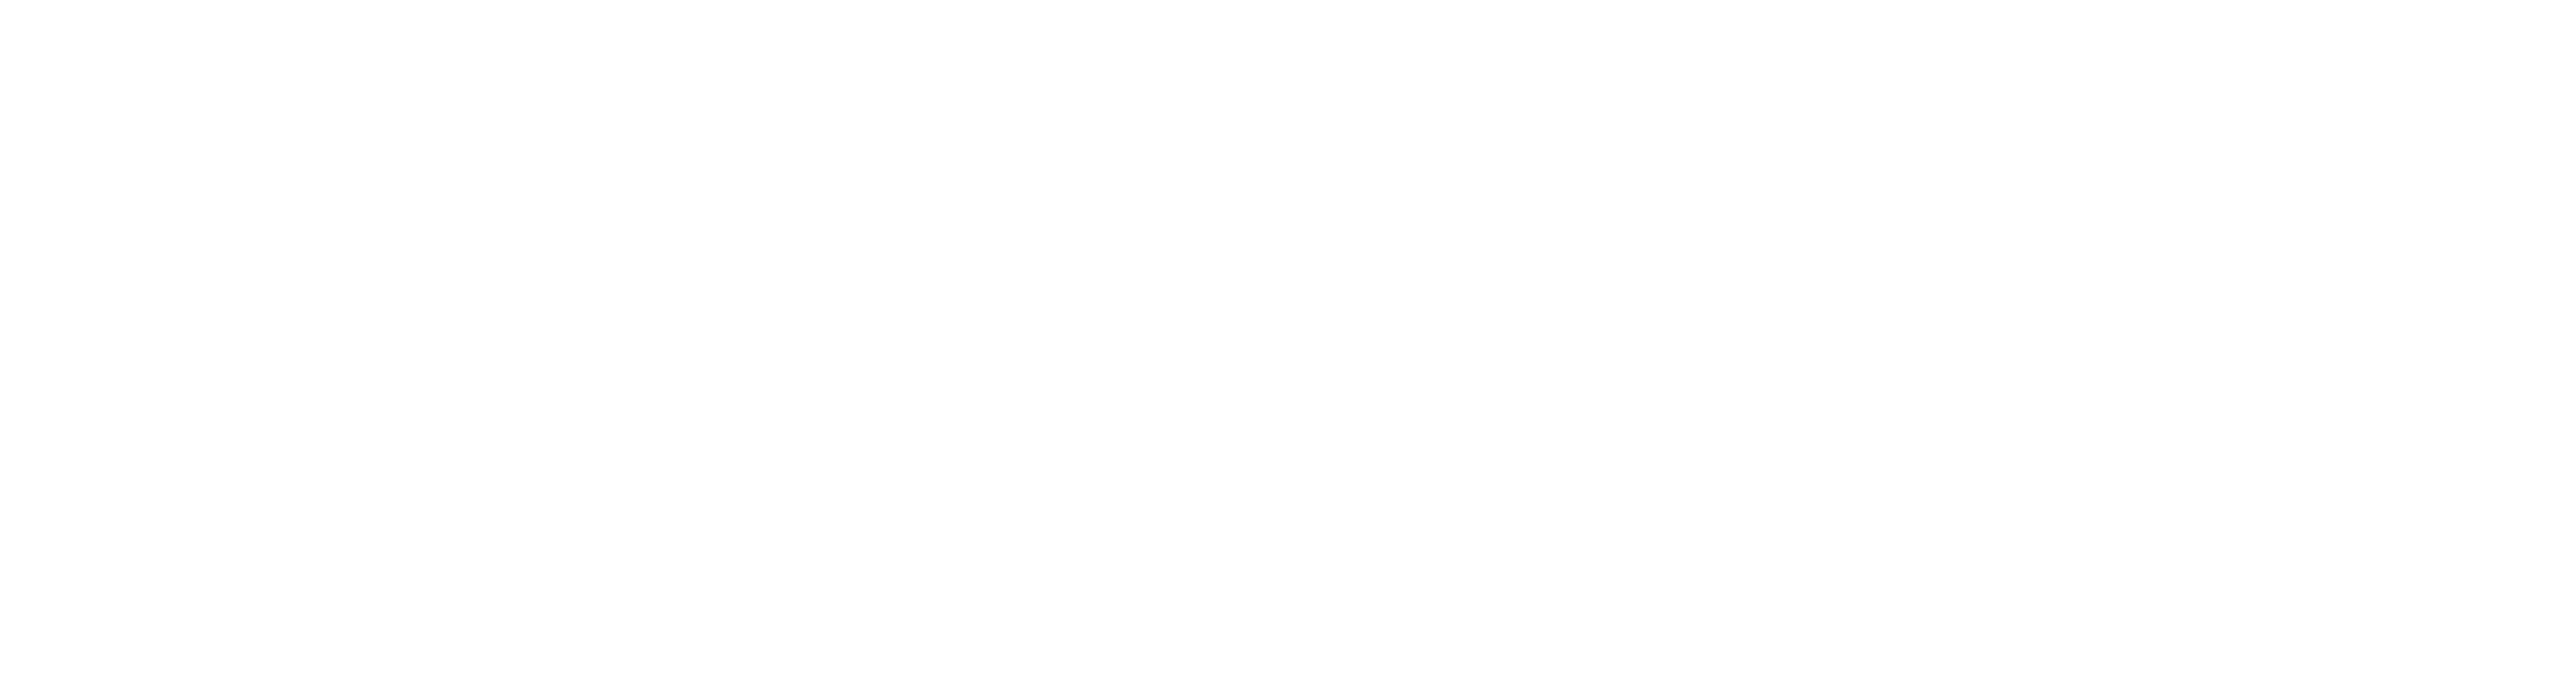 Swink Cattle Co. logo